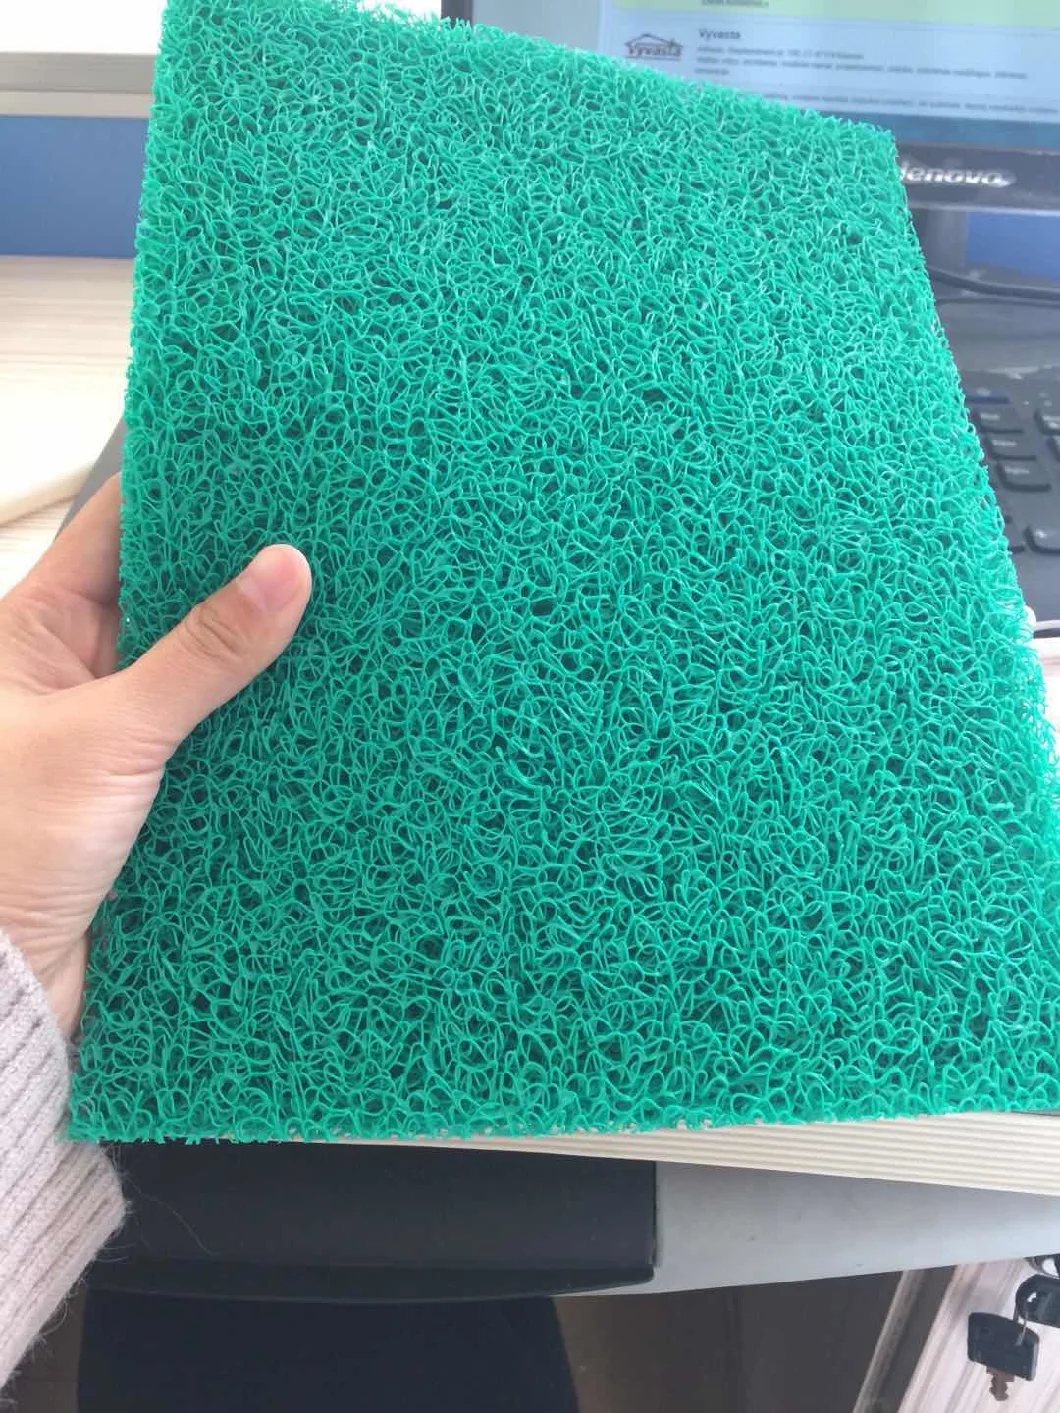 Firm Backing Foam Backing Cushion Mat